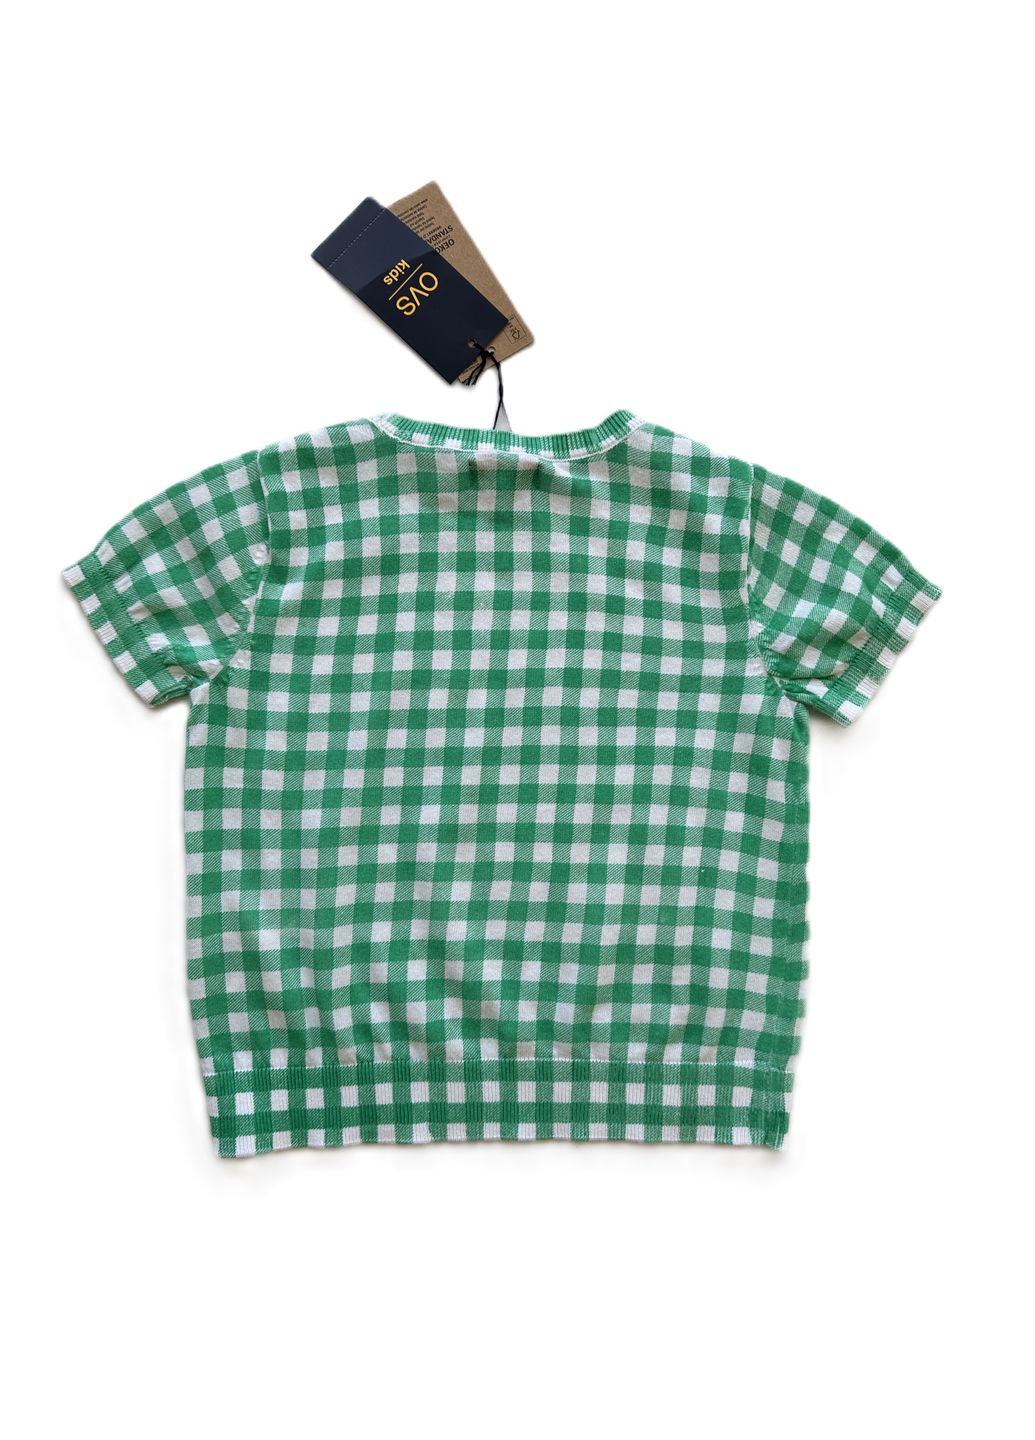 Зеленый летний комплект для девочки футболка в клетку зеленая 2000-15 + леггинсы темно-синие трикотажные 2000-16 (110 см) OVS